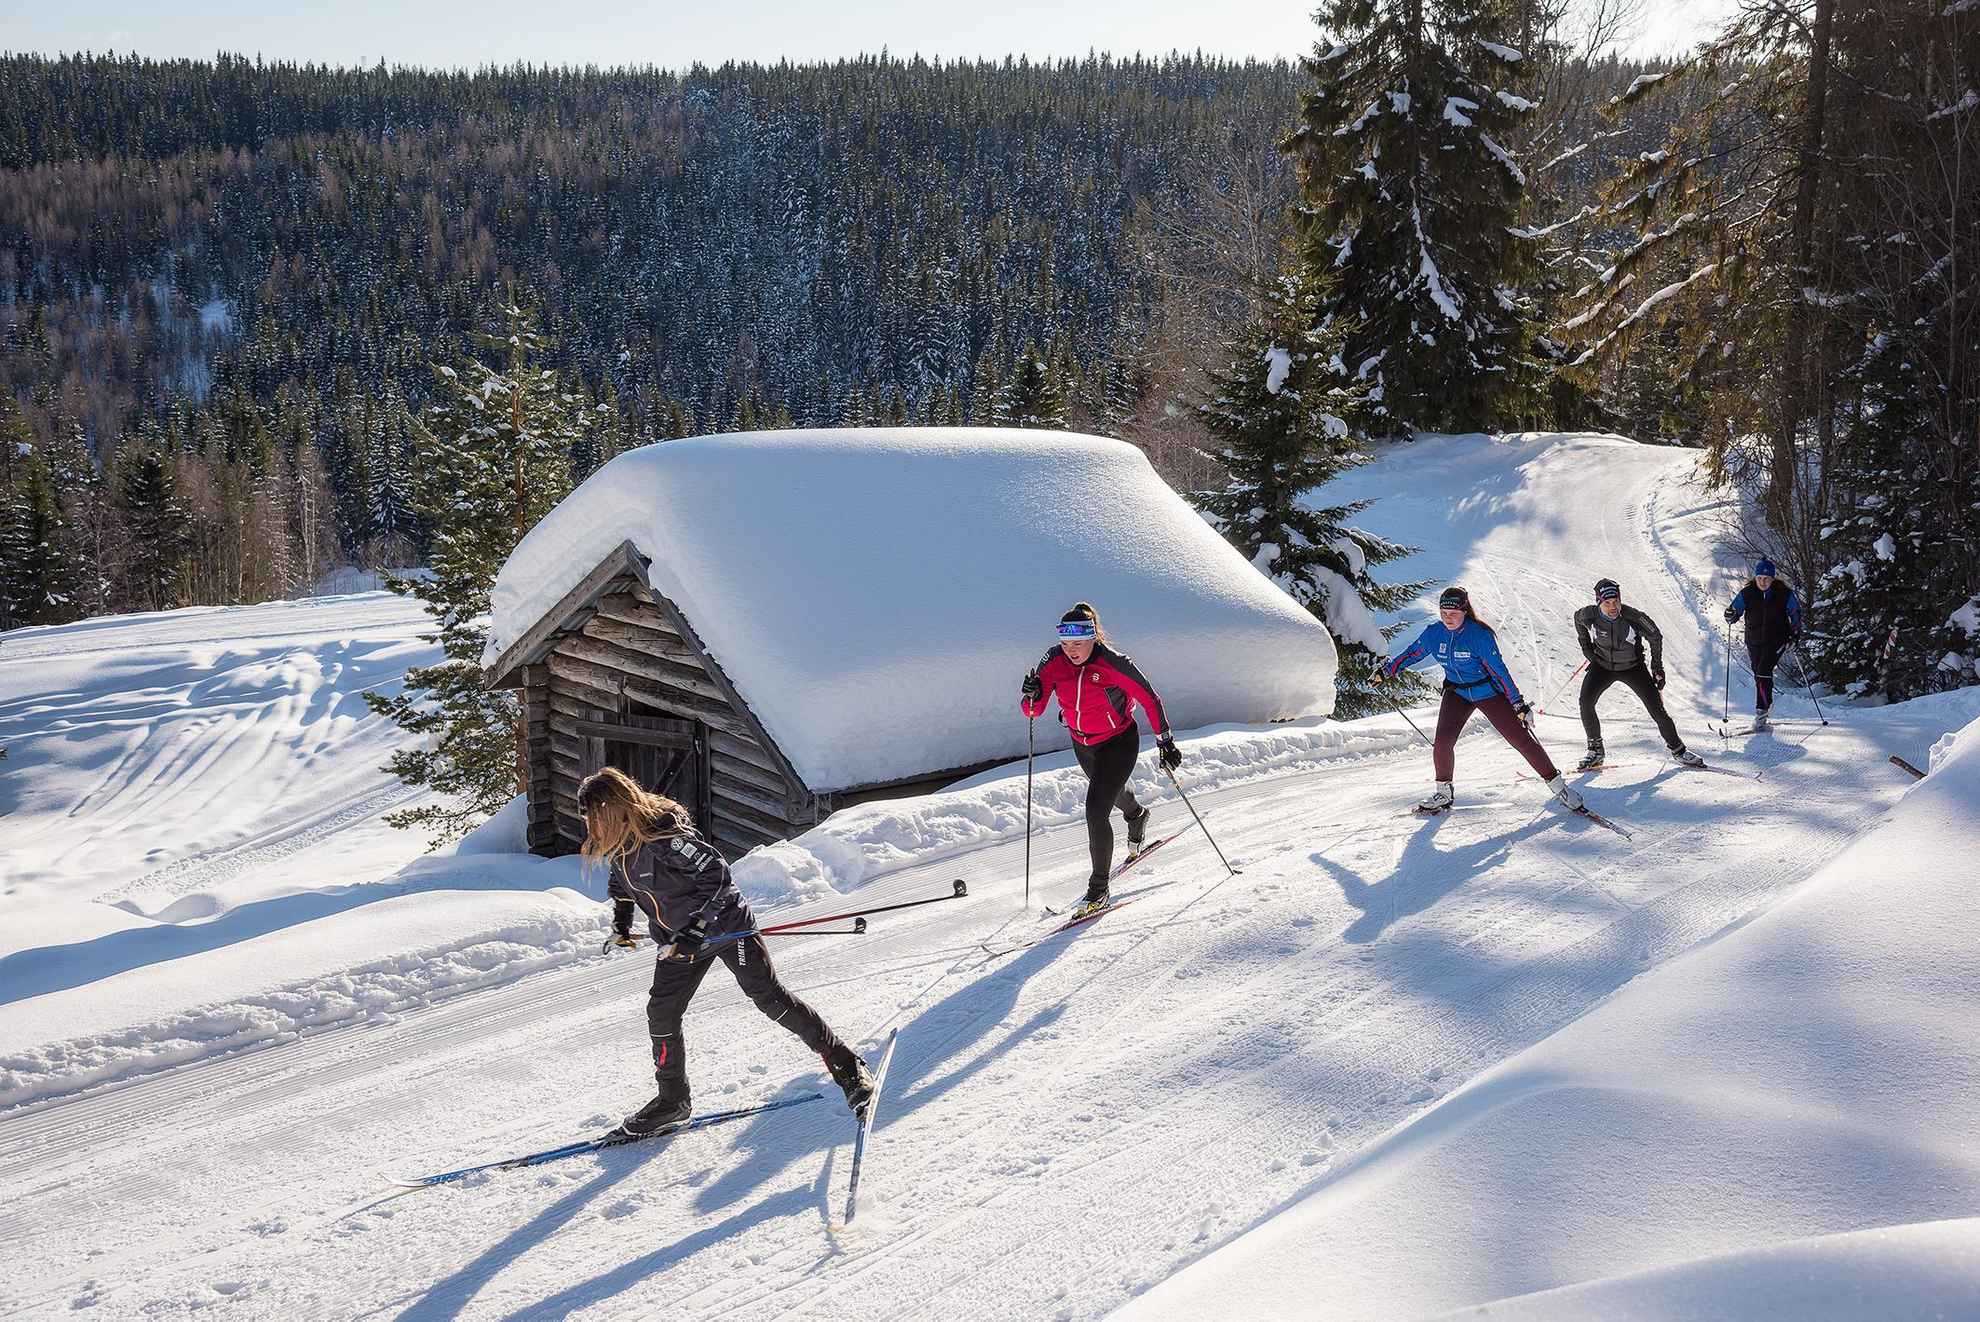 Vijf mensen zijn op een zonnige dag in de winter aan het langlaufen op een heuvel.